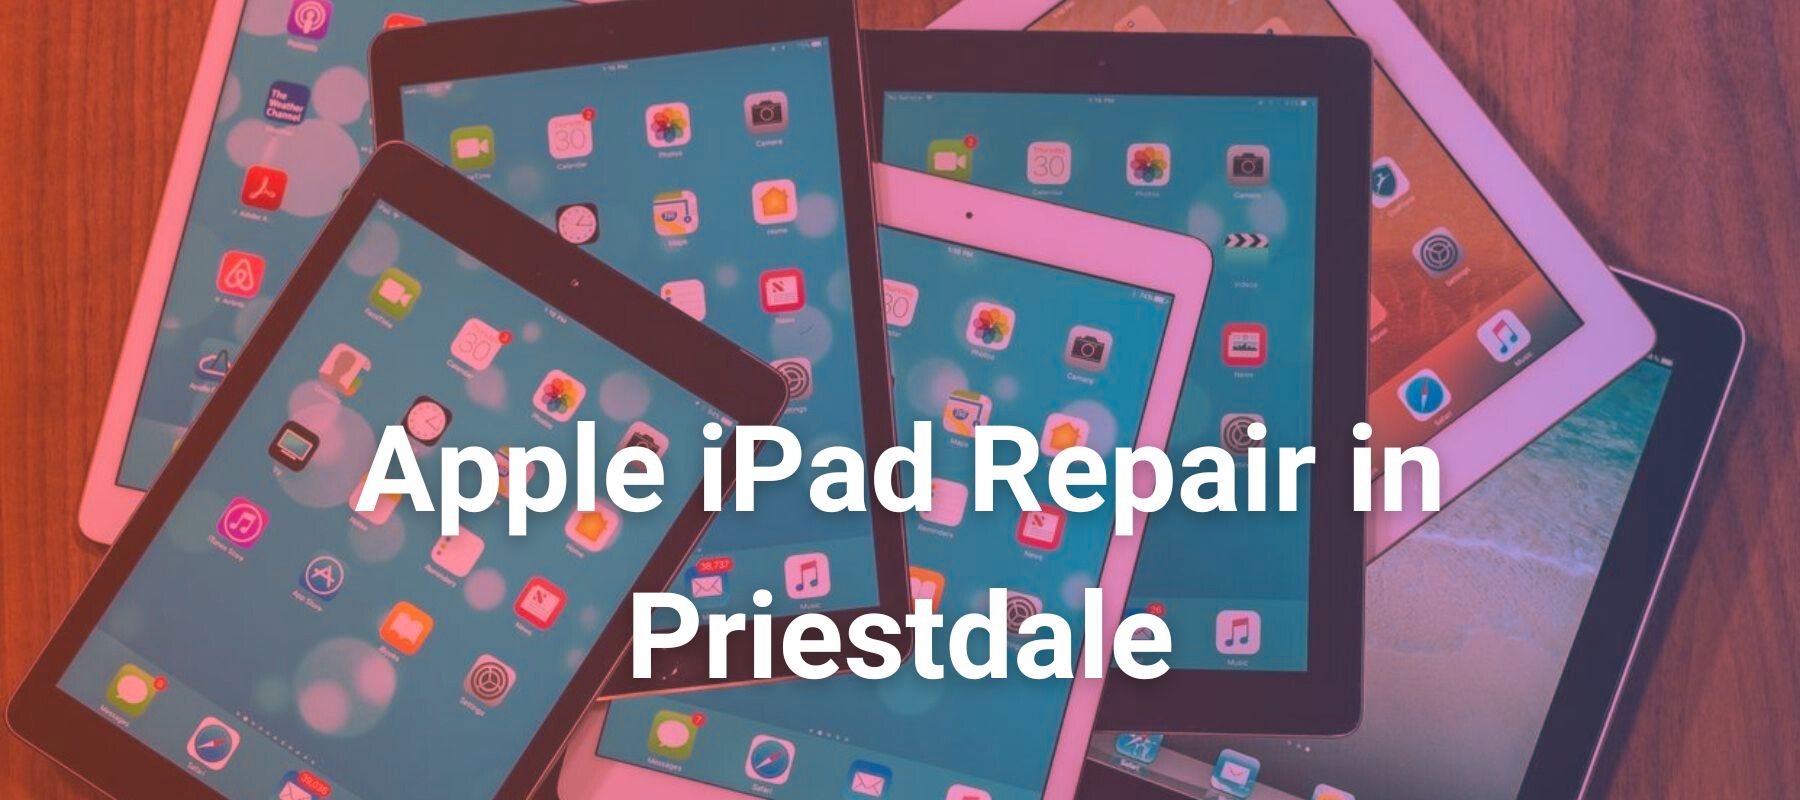 Apple iPad Repair in Priestdale